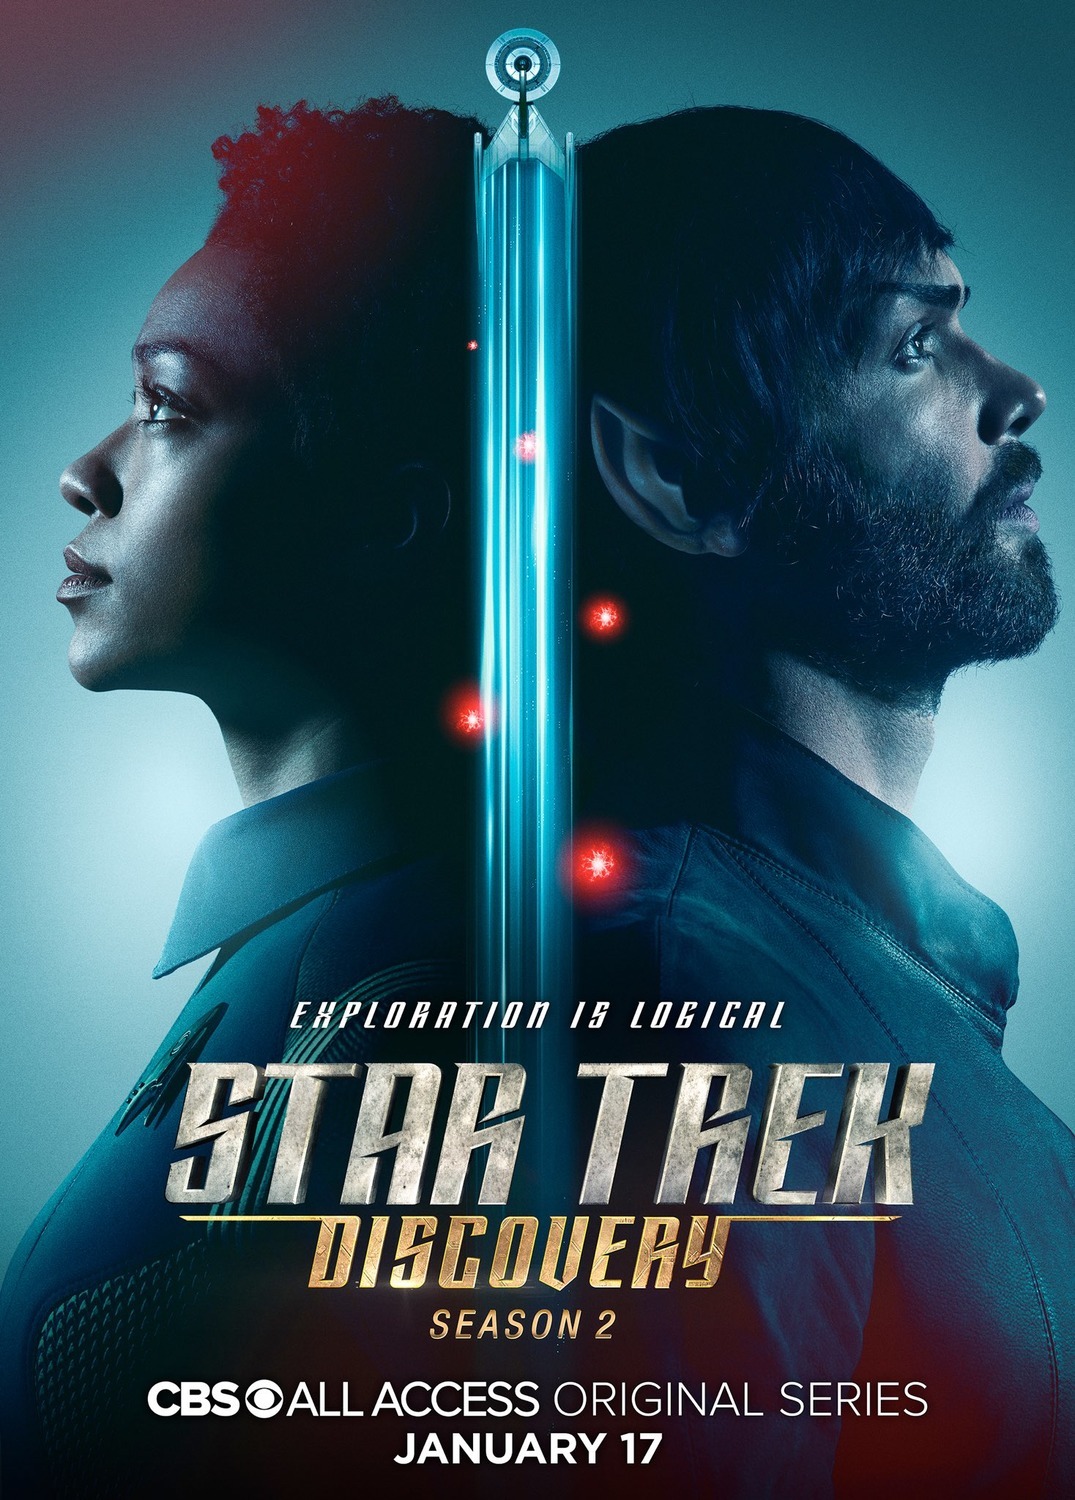 ดูหนังออนไลน์ฟรี Star Trek Discovery Season 2 EP.1 สตาร์ เทรค ดิสคัฟเวอรี่ ซีซั่นที่ 2 ตอนที่ 1